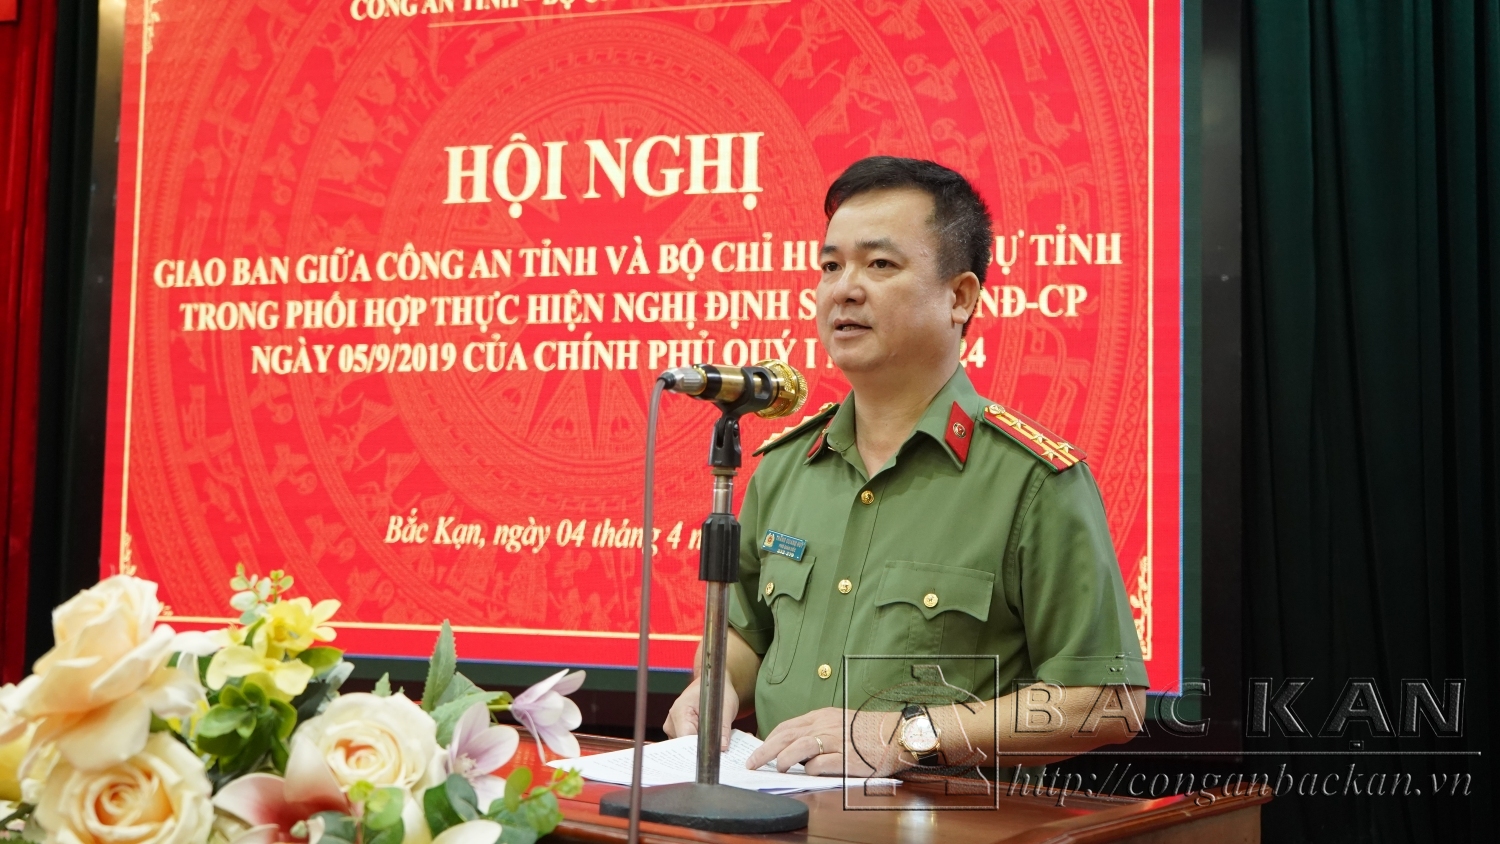 Đại tá Thăng Quang Huy, Phó Giám đốc Công an tỉnh phát biểu khai mạc.